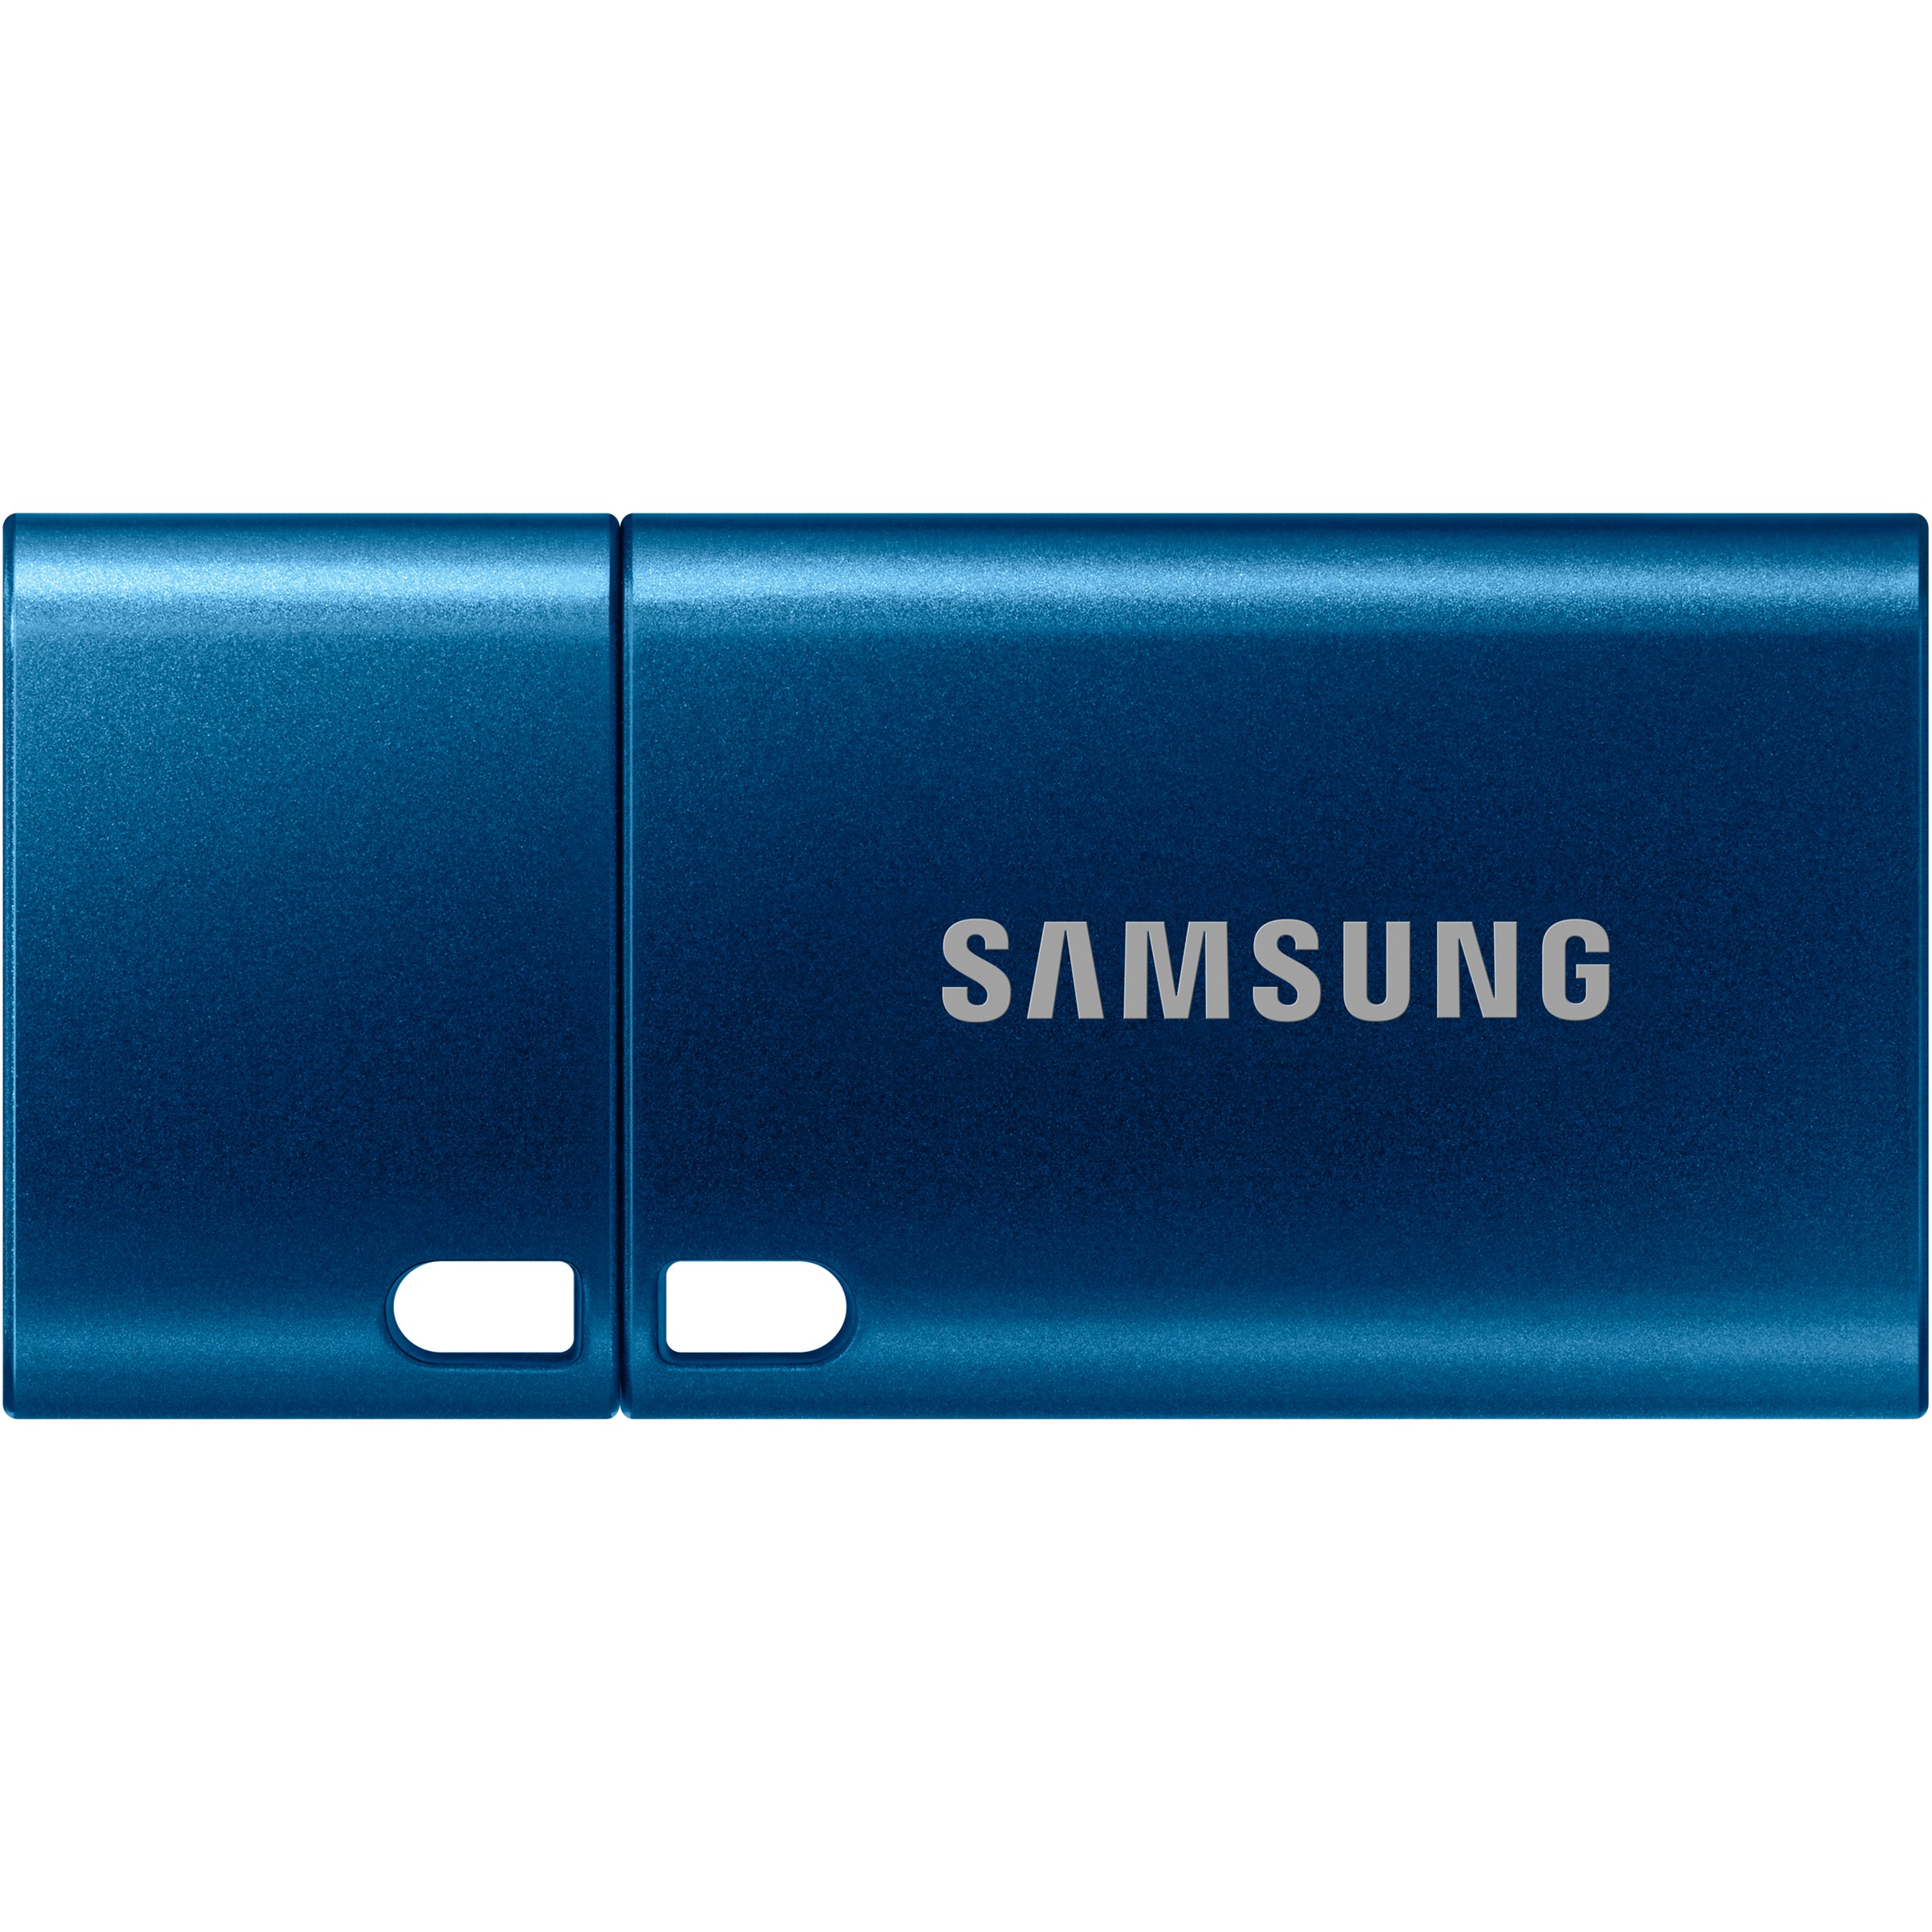 Samsung MUF-64DA USB flash drive